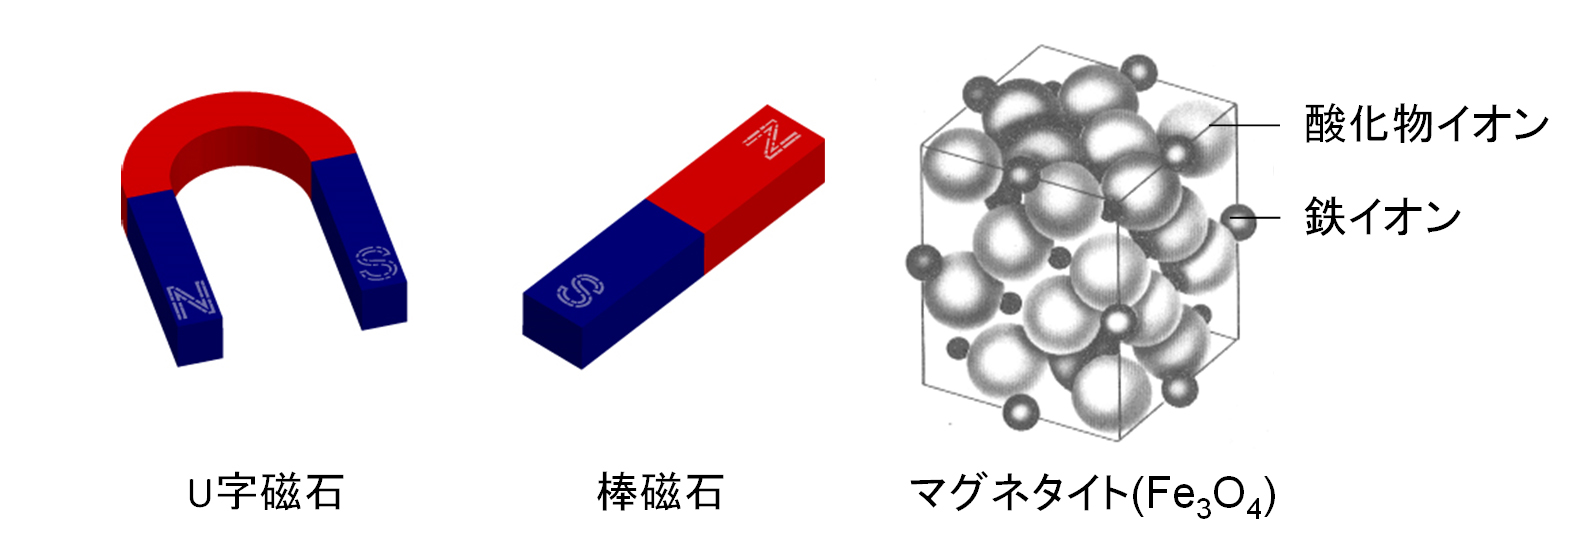 磁場に強く 電流も流れない 錆びない理想的なフェライト棒磁石の開発に成功 東京大学 大学院理学系研究科 理学部